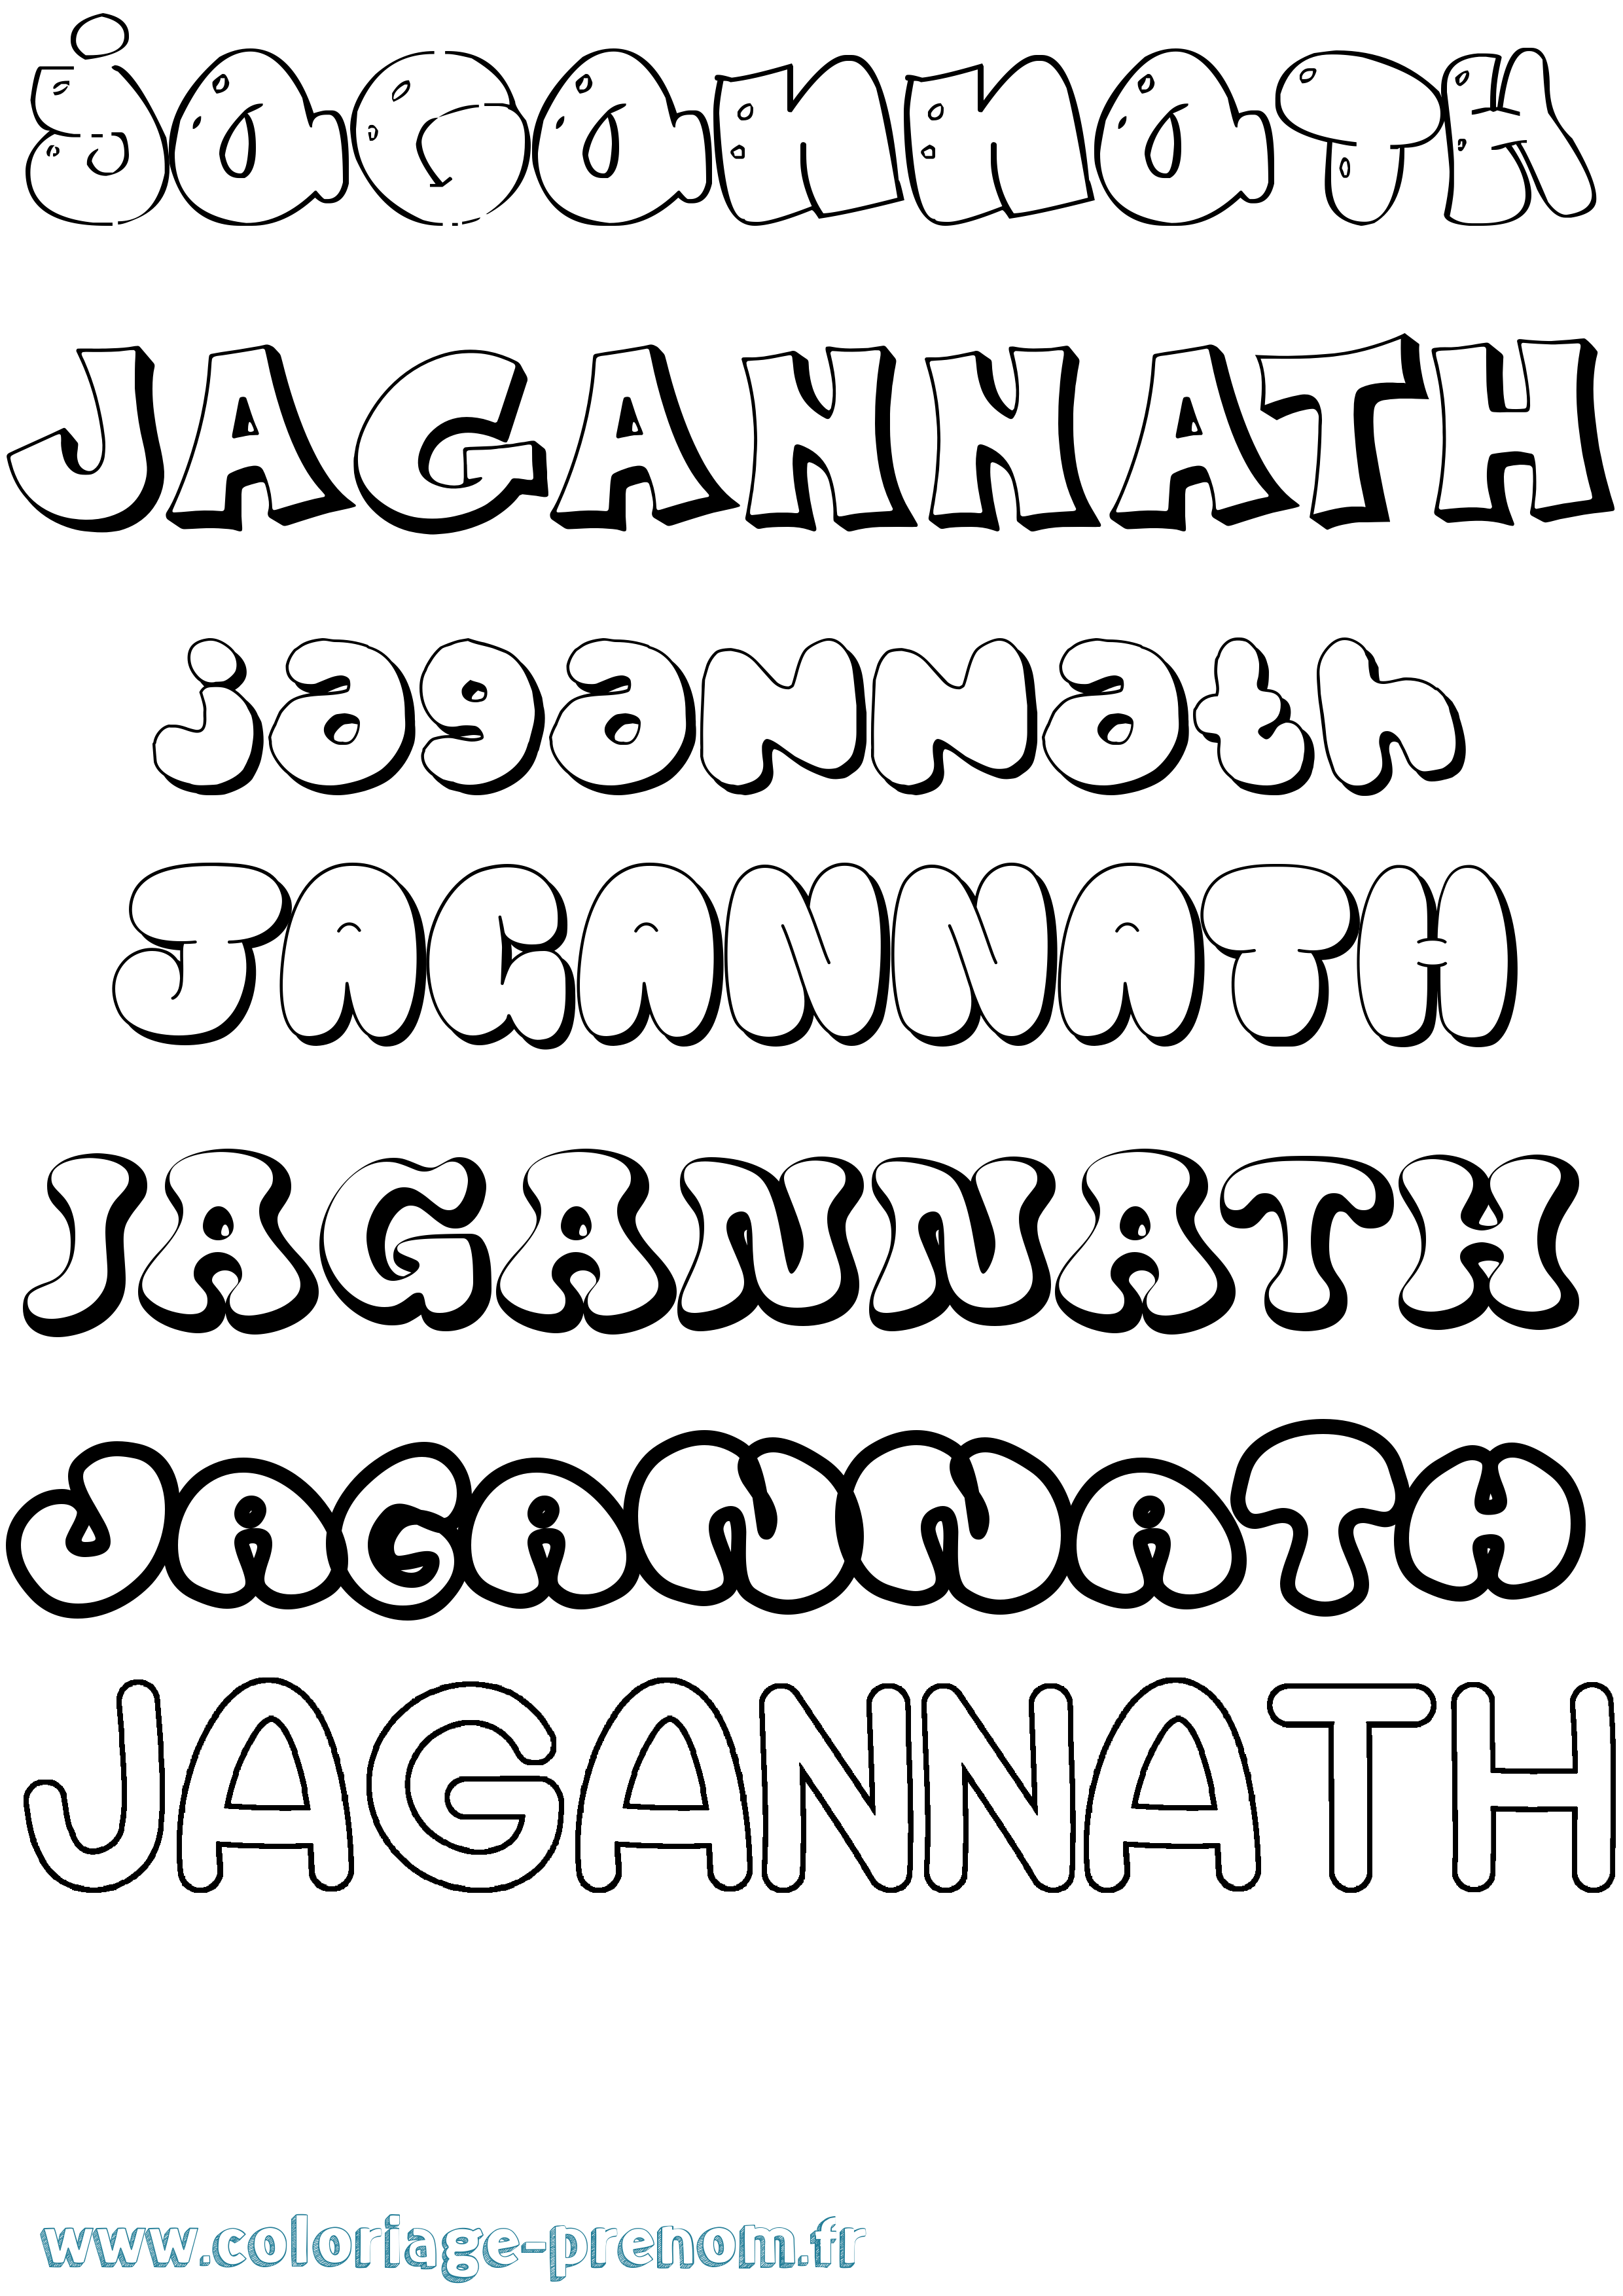 Coloriage prénom Jagannath Bubble